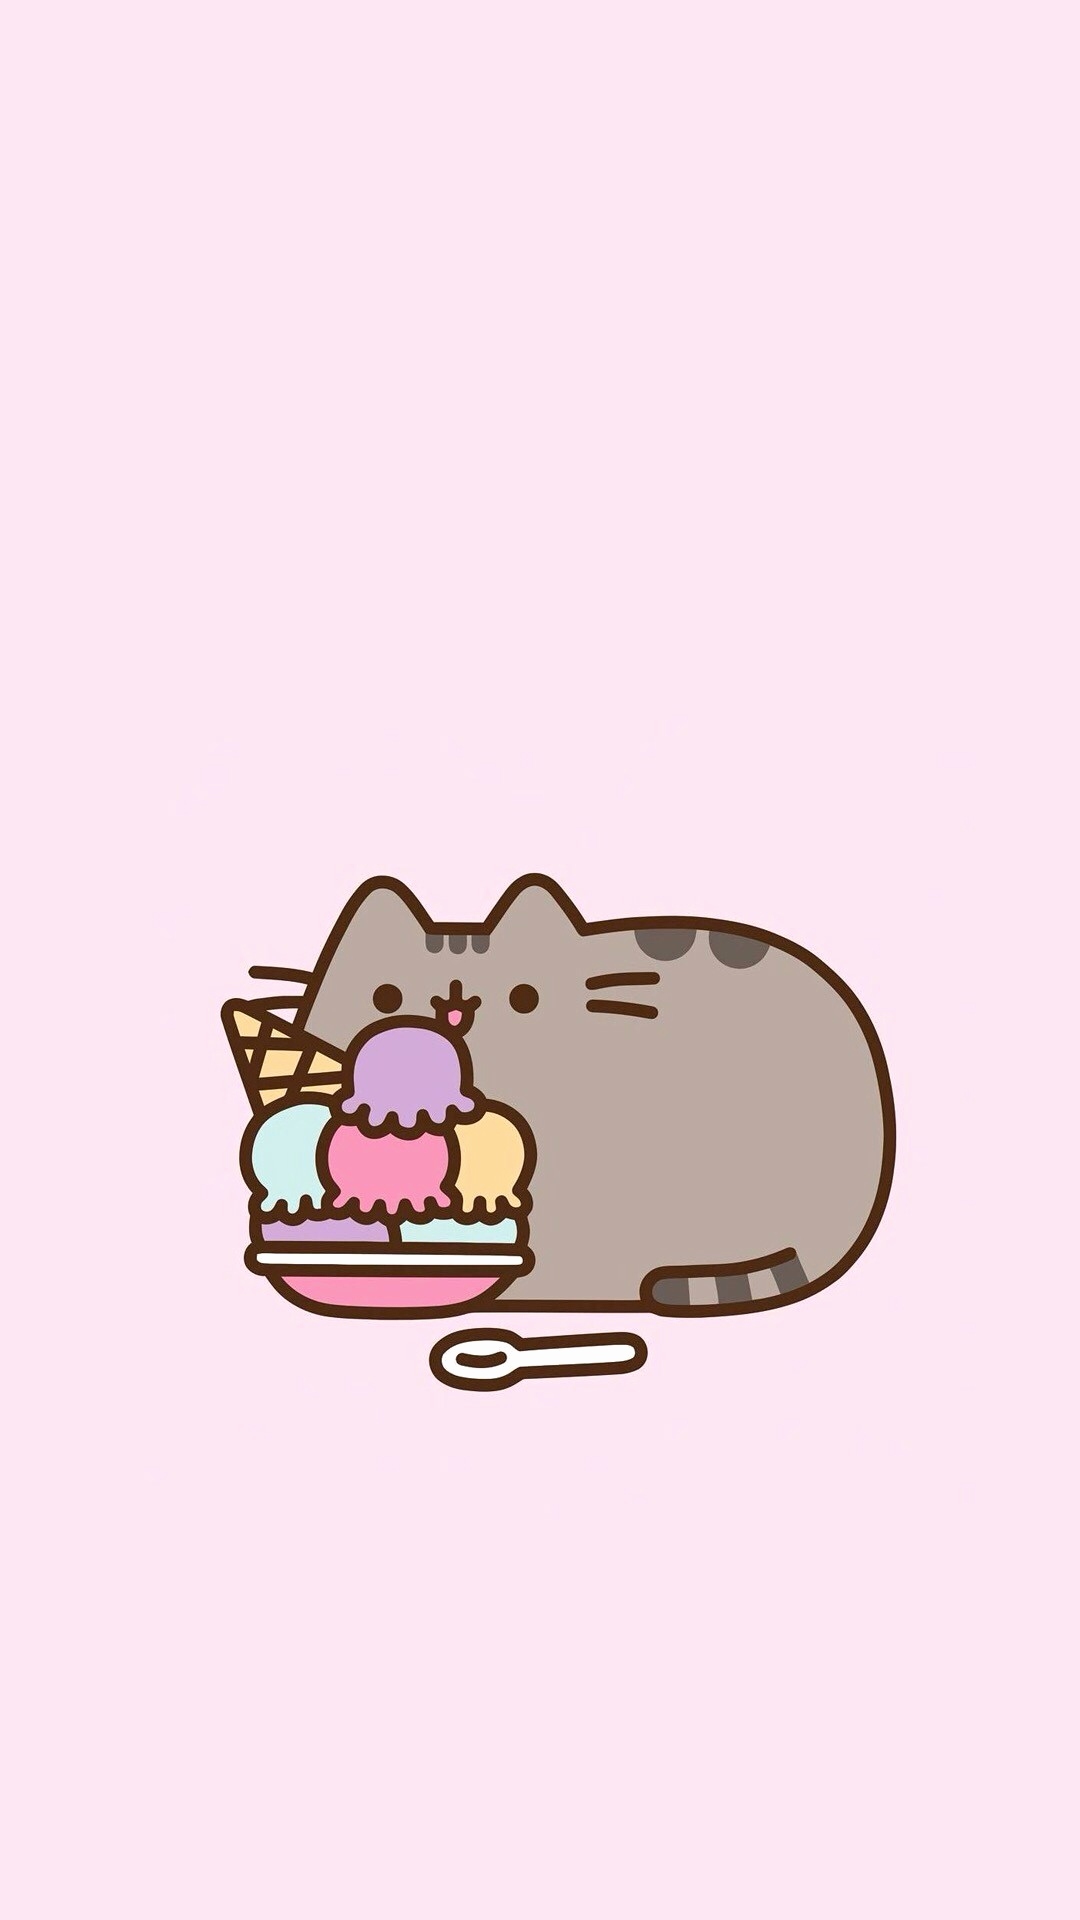 Donut eat me  Pusheen cat Pusheen cute Pusheen birthday